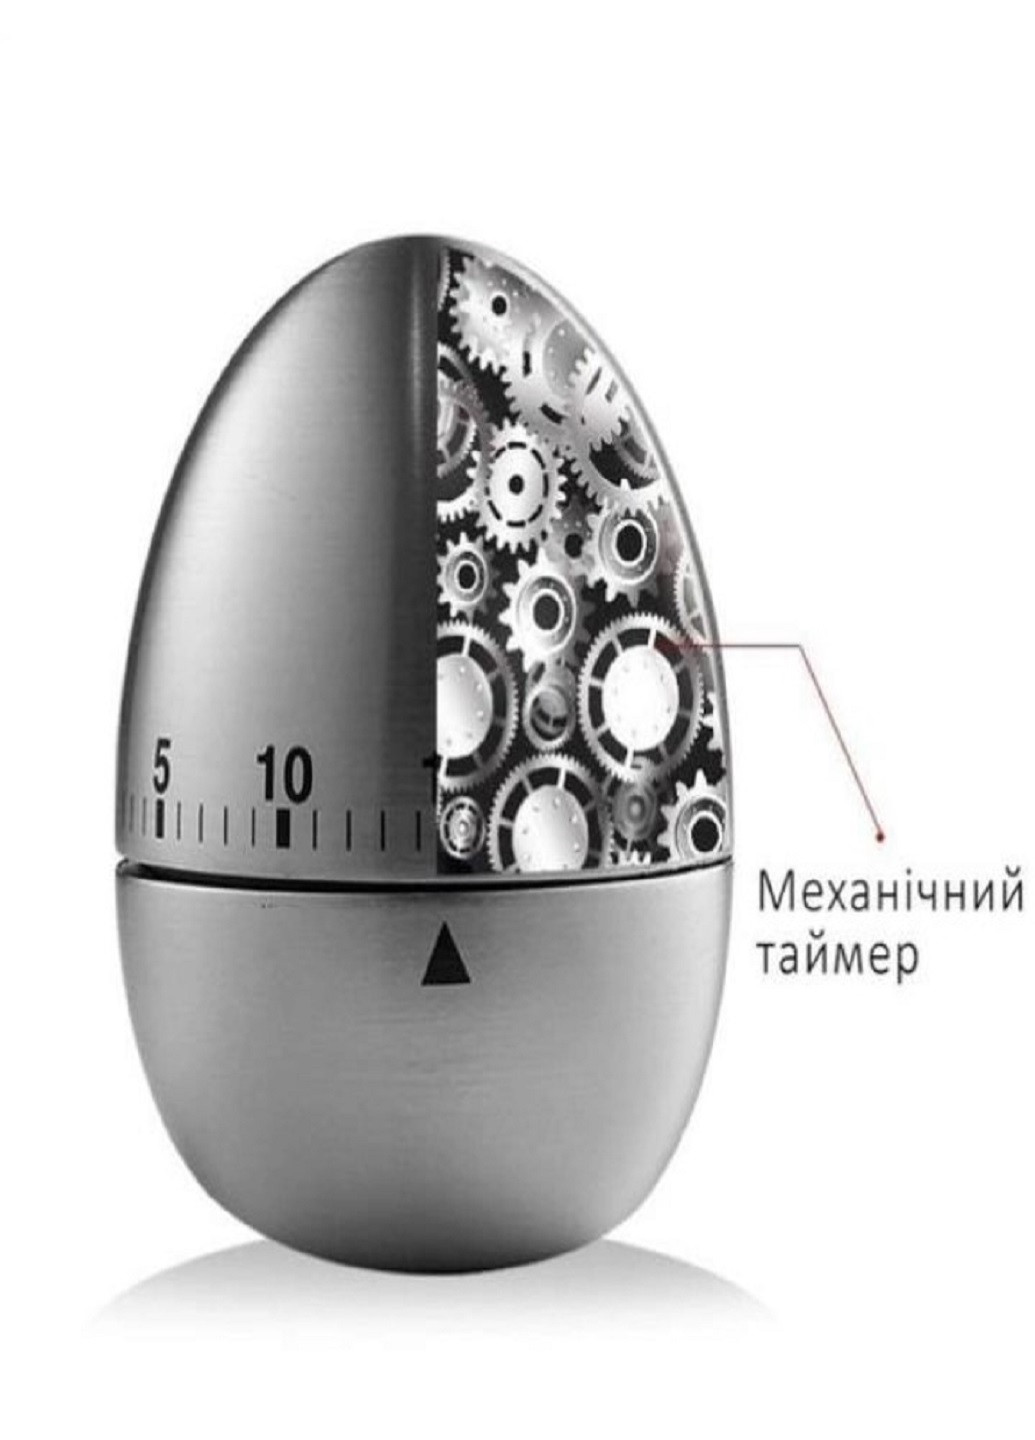 Механический кухонный таймер яйцо из нержавеющей стали VTech (277359144)